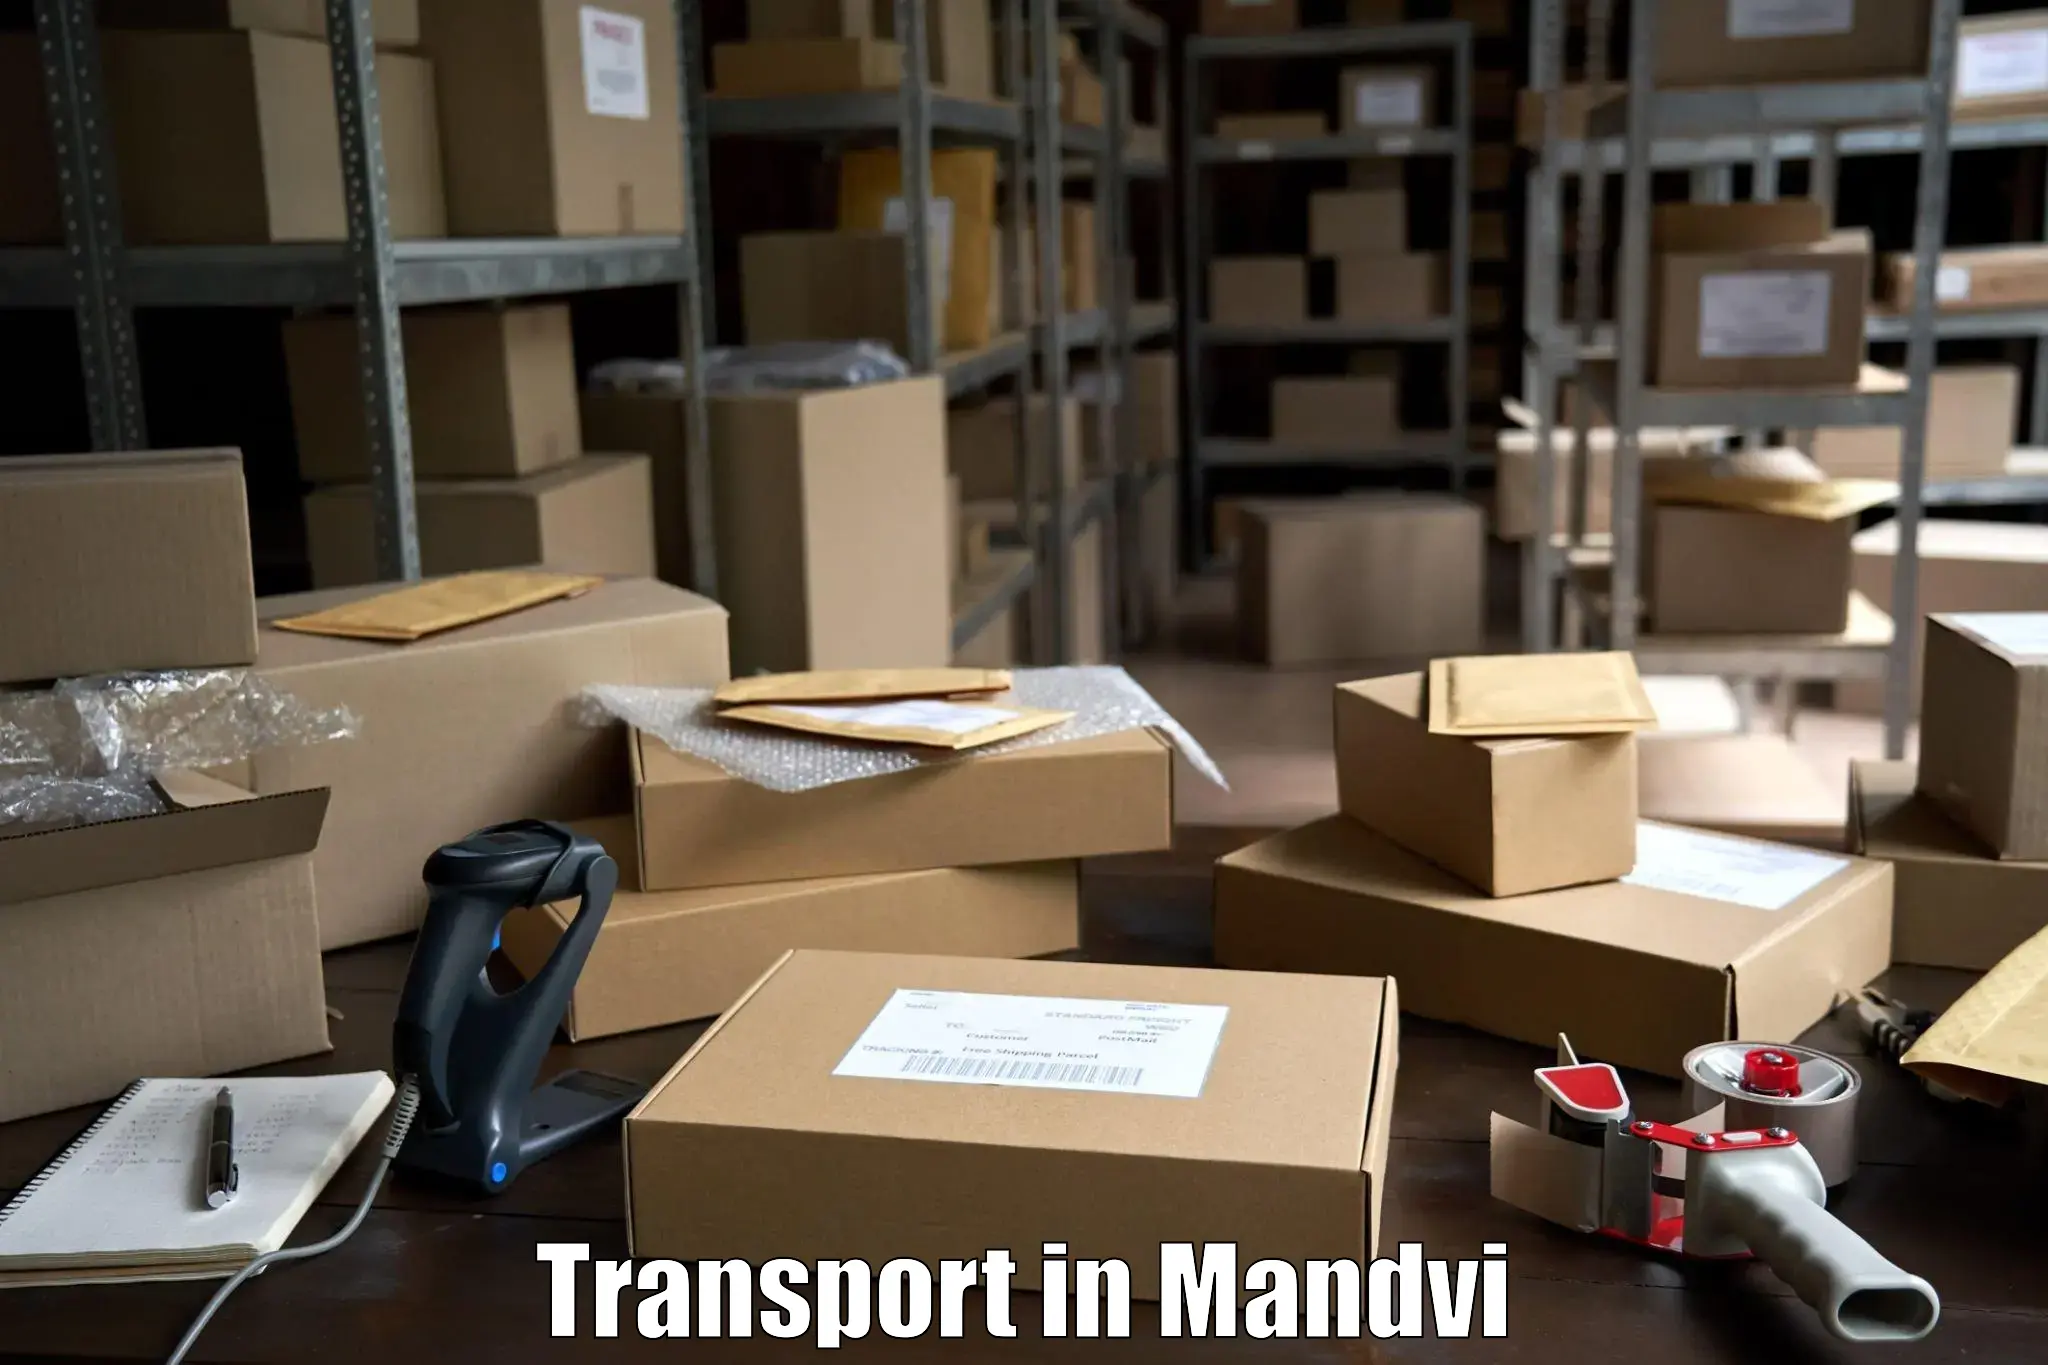 Container transport service in Mandvi